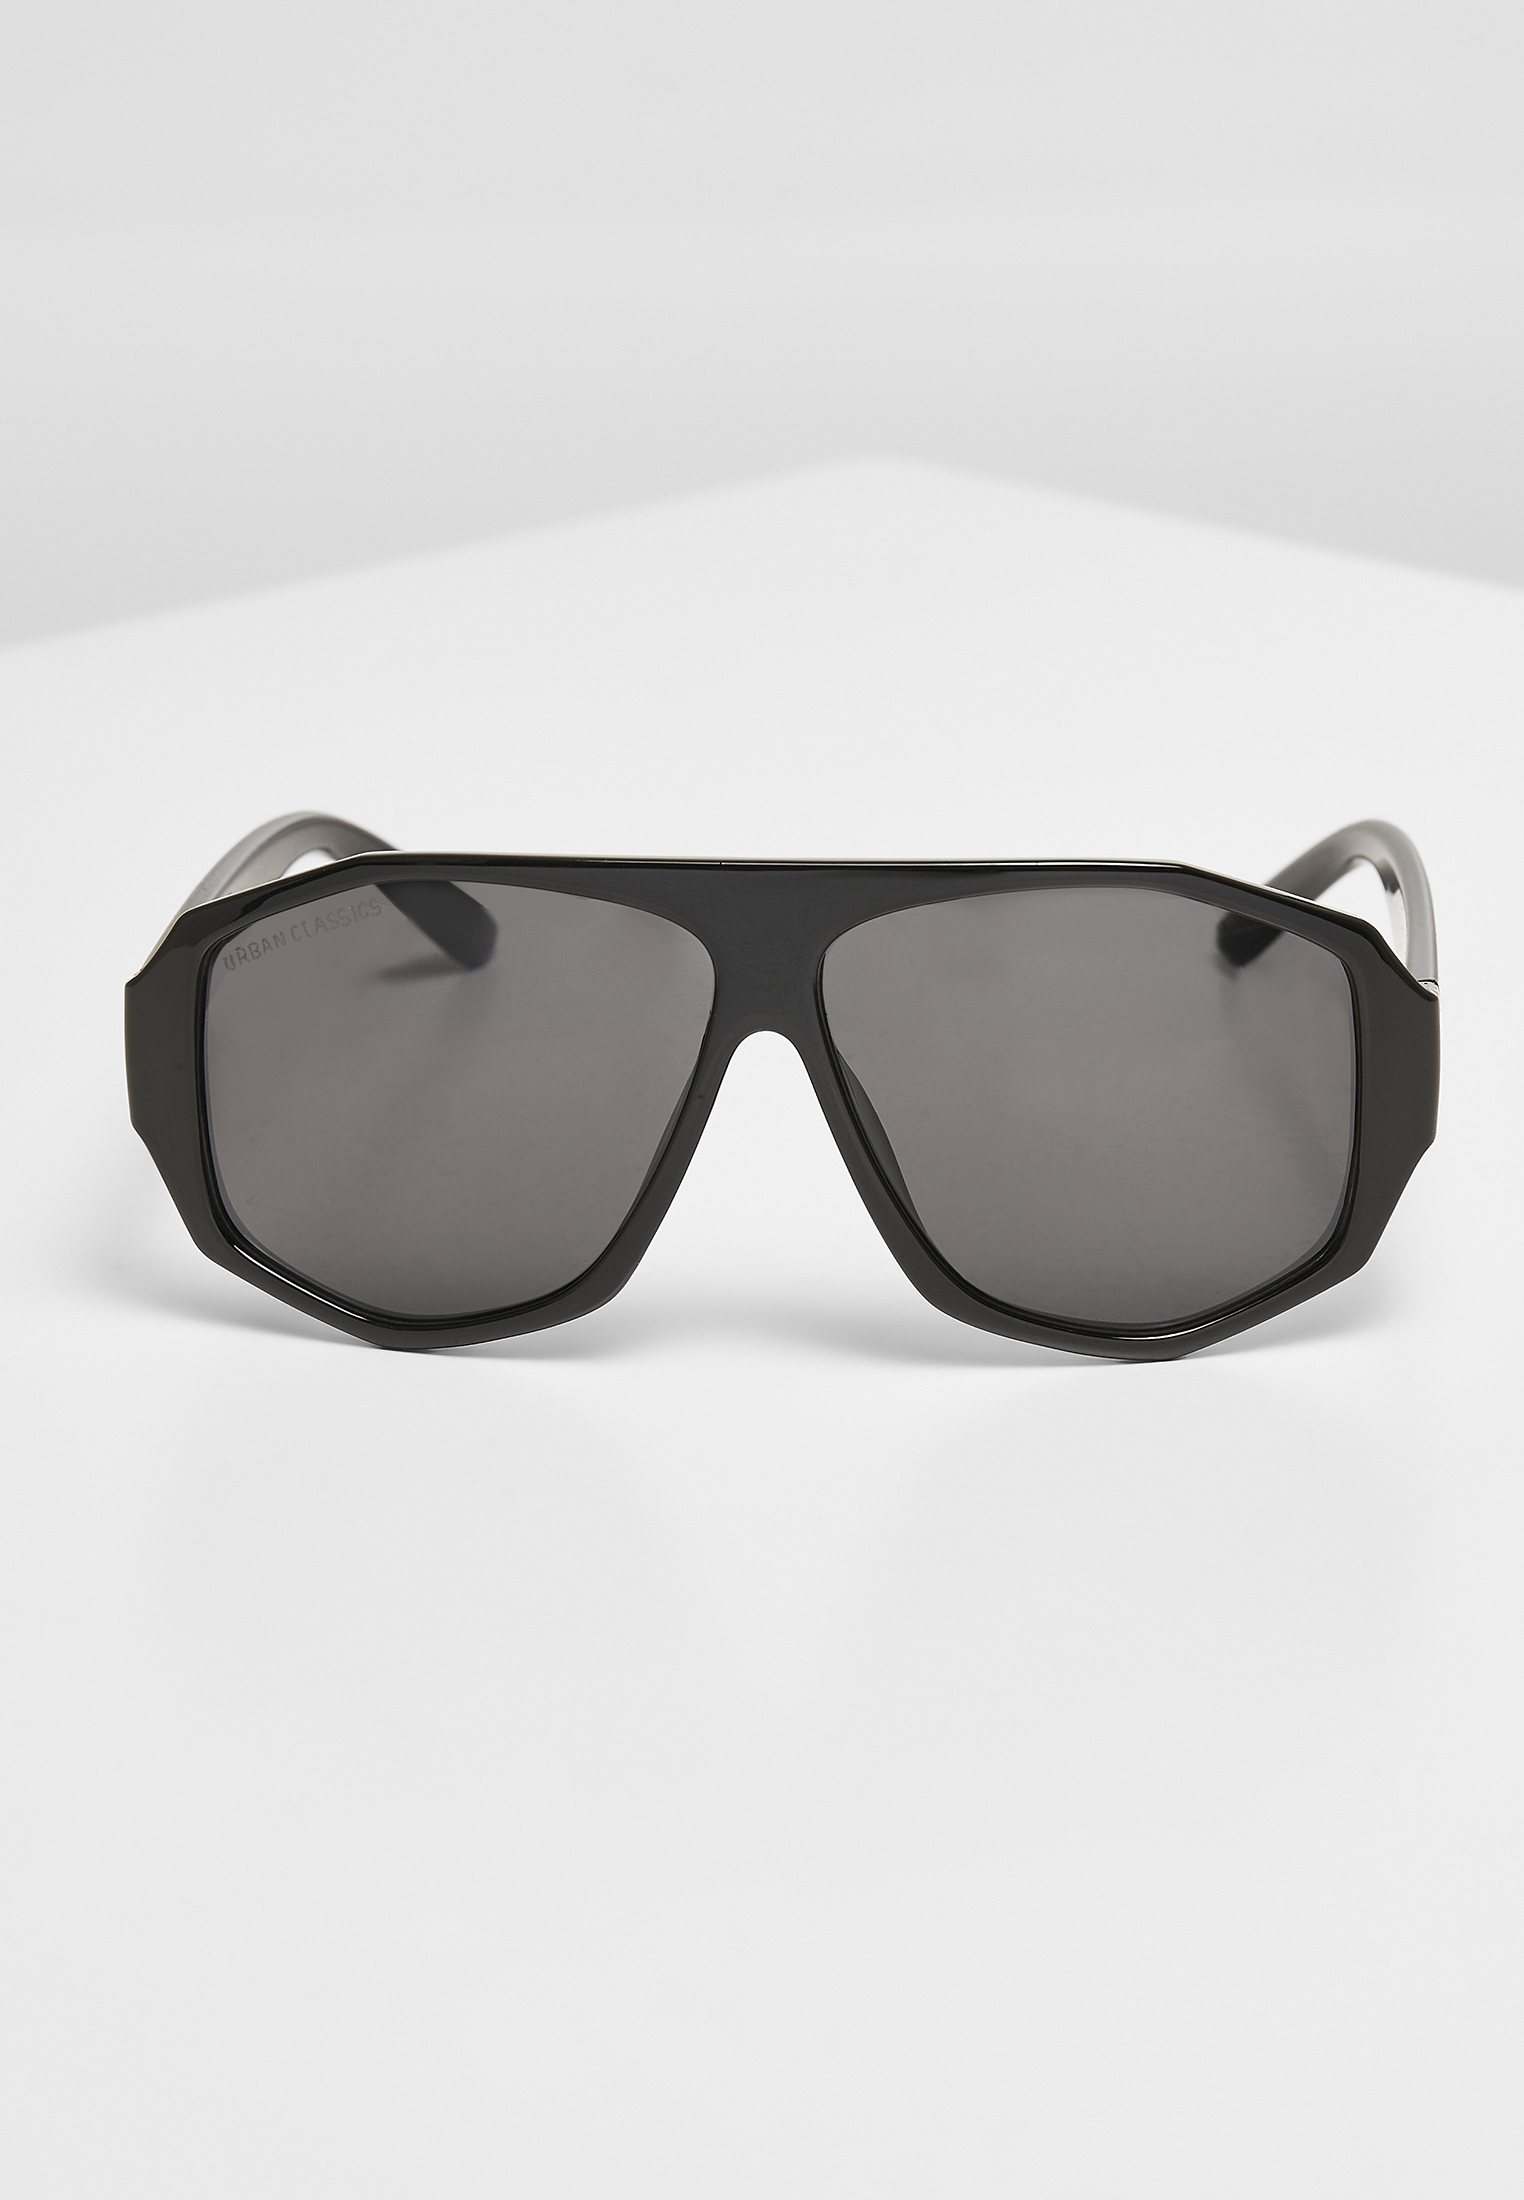 Sonnenbrillen 101 Sunglasses UC in Farbe black/black